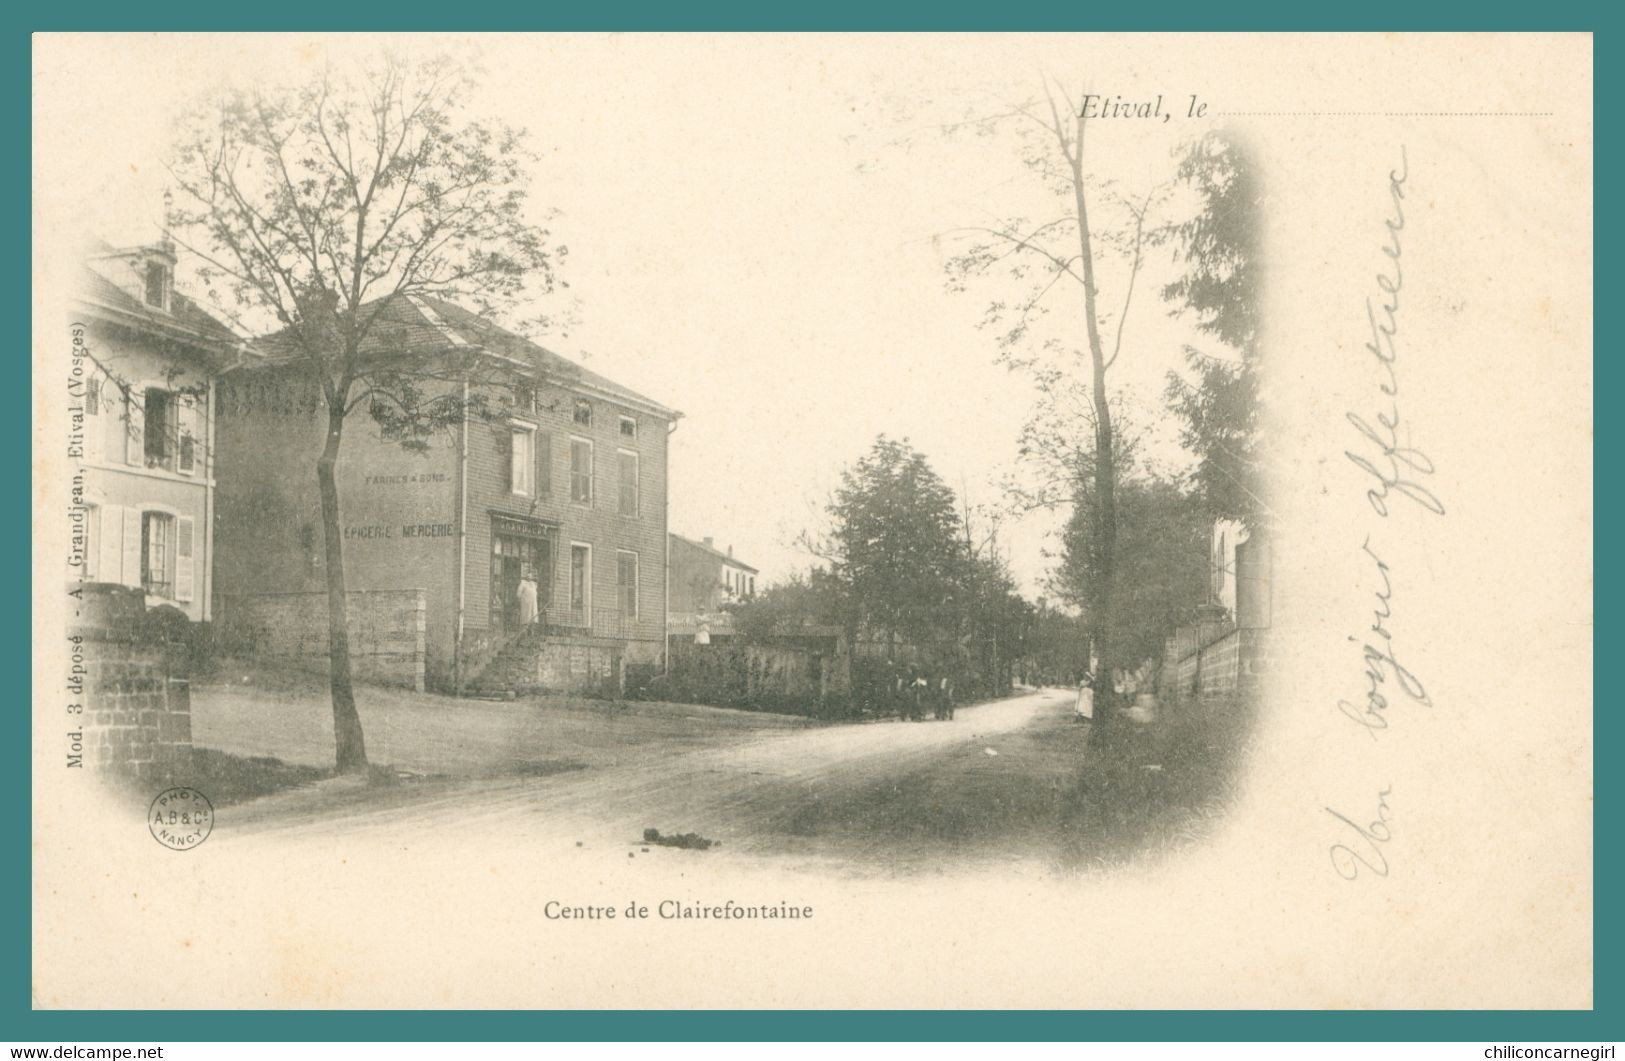 ETIVAL - Centre De Clairefontaine - Animée - Edit. A. GRANDJEAN - Convoyeur Ambulant 1902 - Etival Clairefontaine